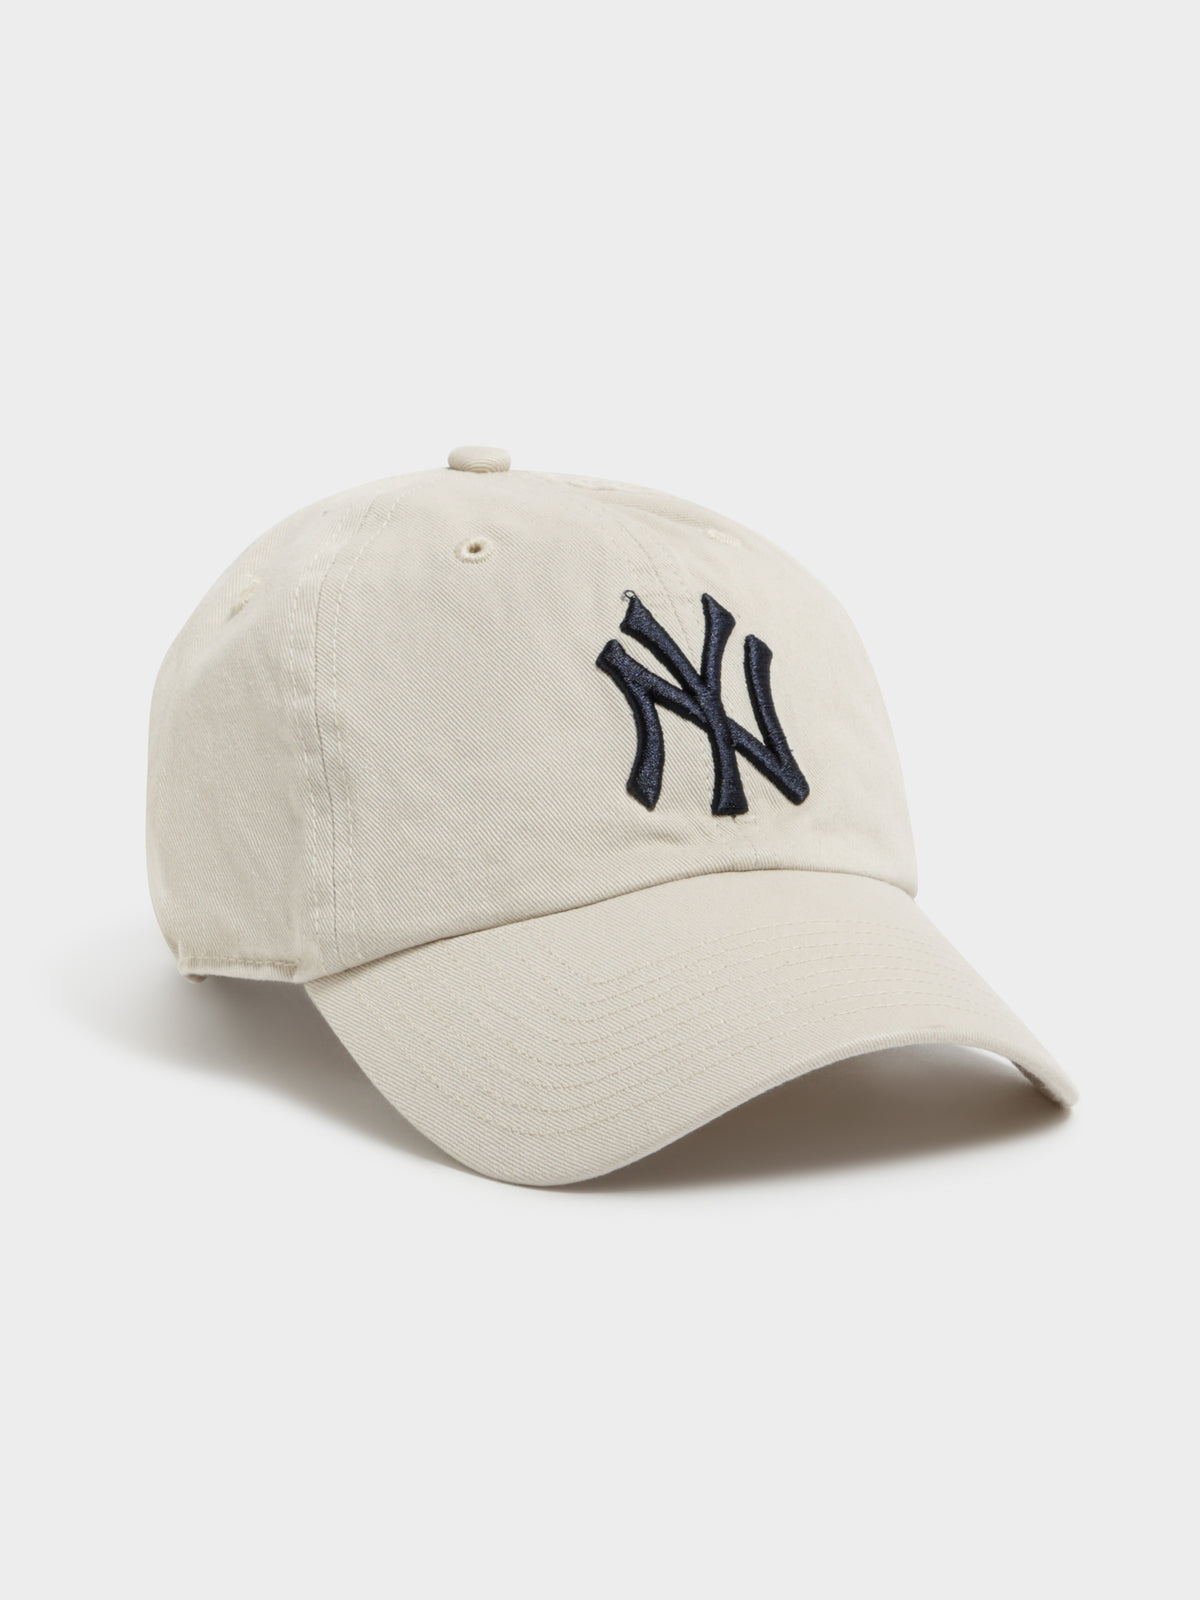 Clean Up New York Yankees Cap in Bone